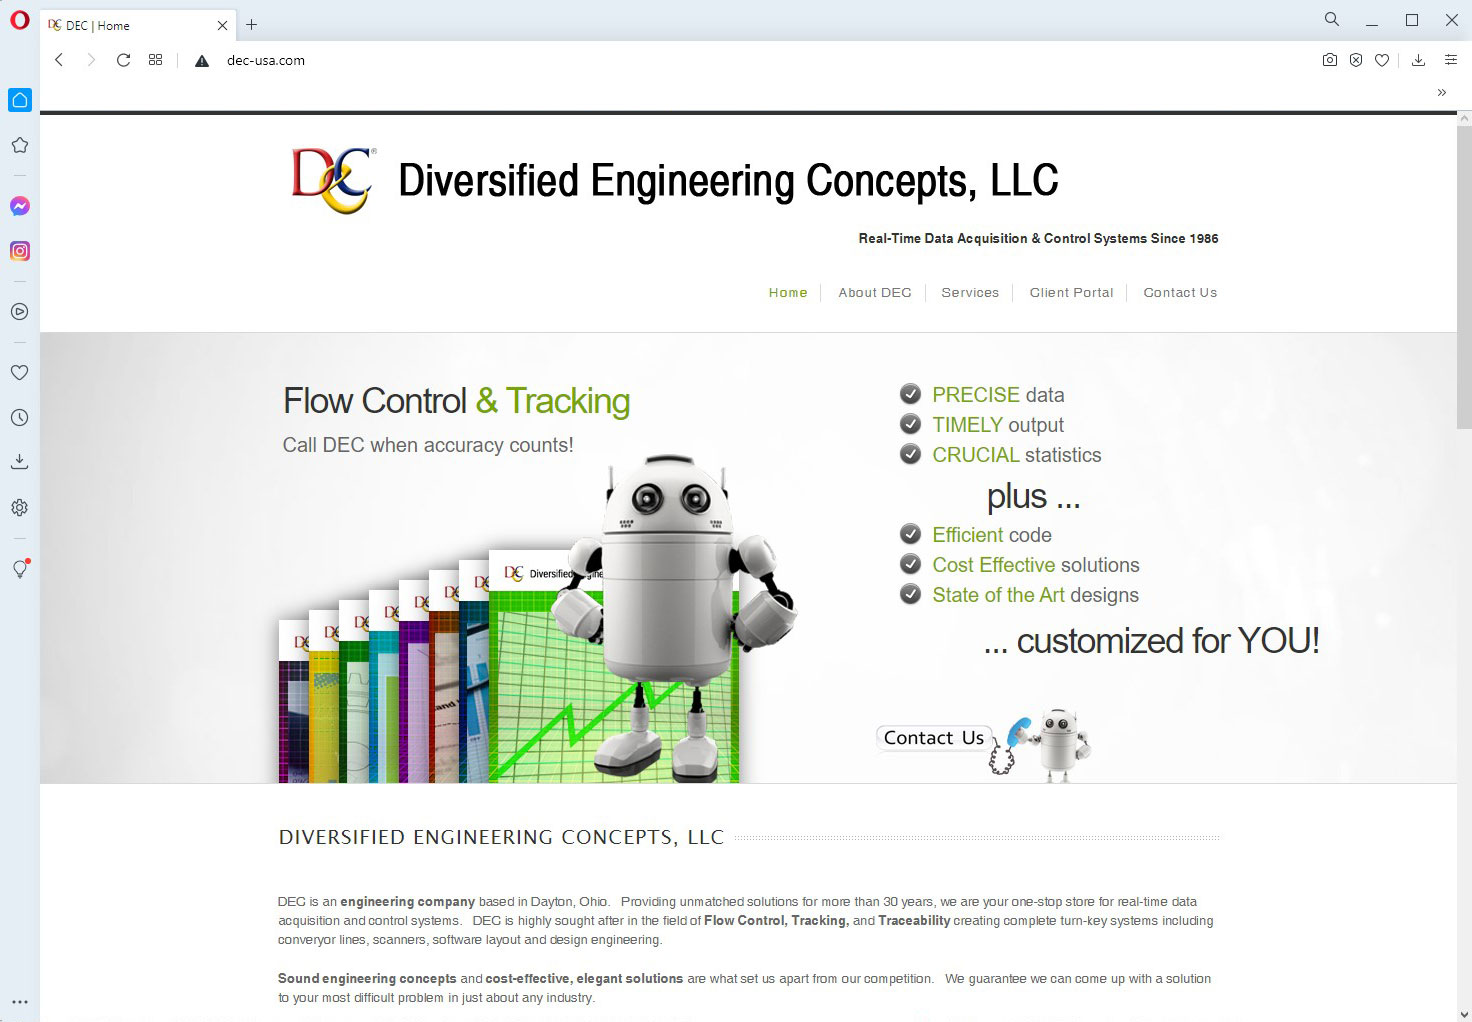 Diversified Engineering Concepts, LLC - DEC Website Image